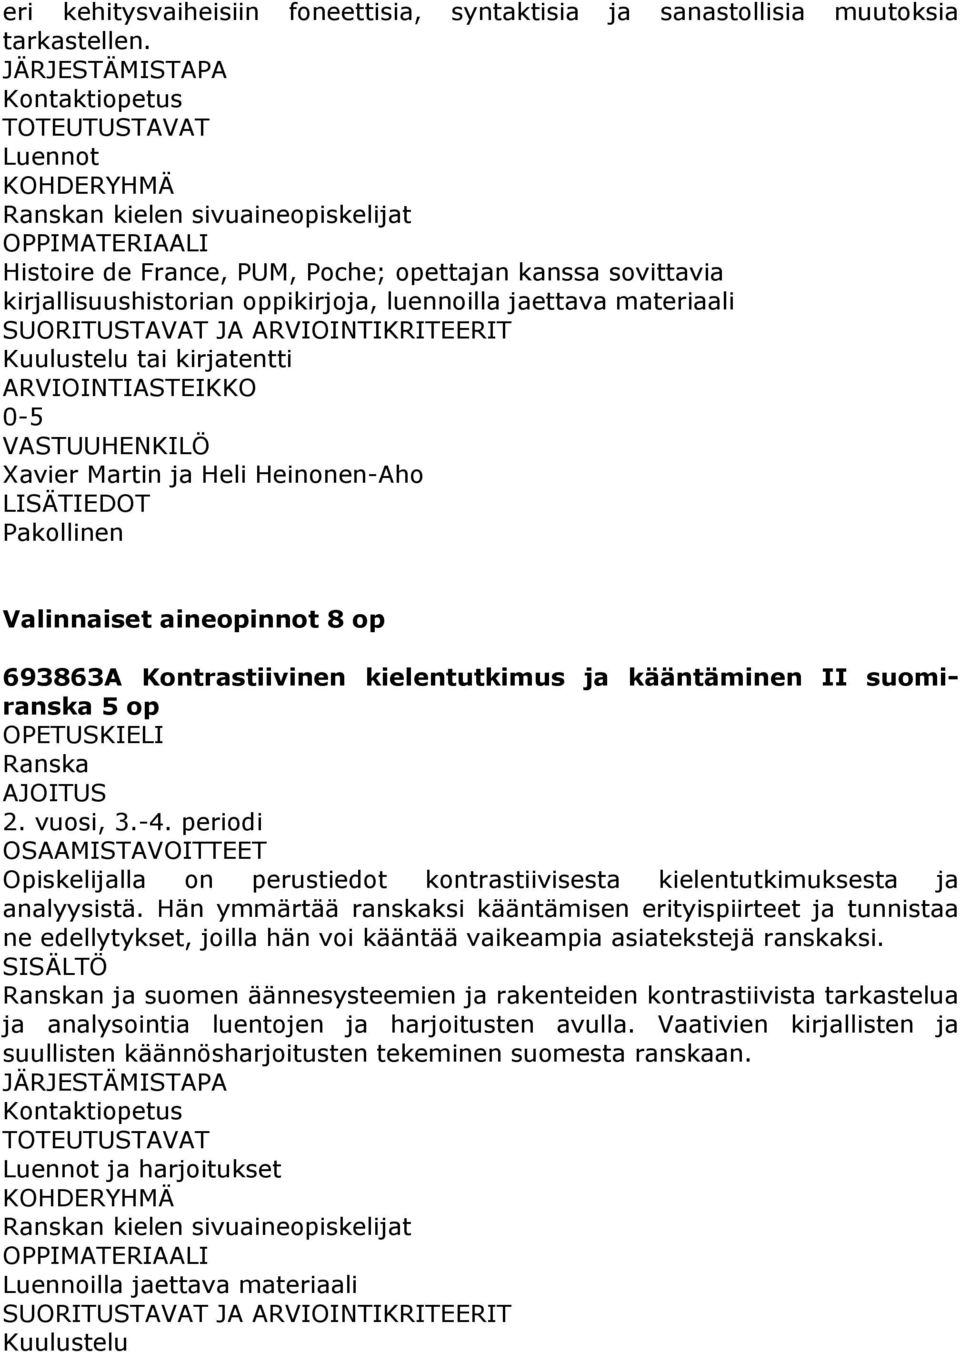 Pakollinen Valinnaiset aineopinnot 8 op 693863A Kontrastiivinen kielentutkimus ja kääntäminen II suomiranska 5 op 2. vuosi, 3.-4.